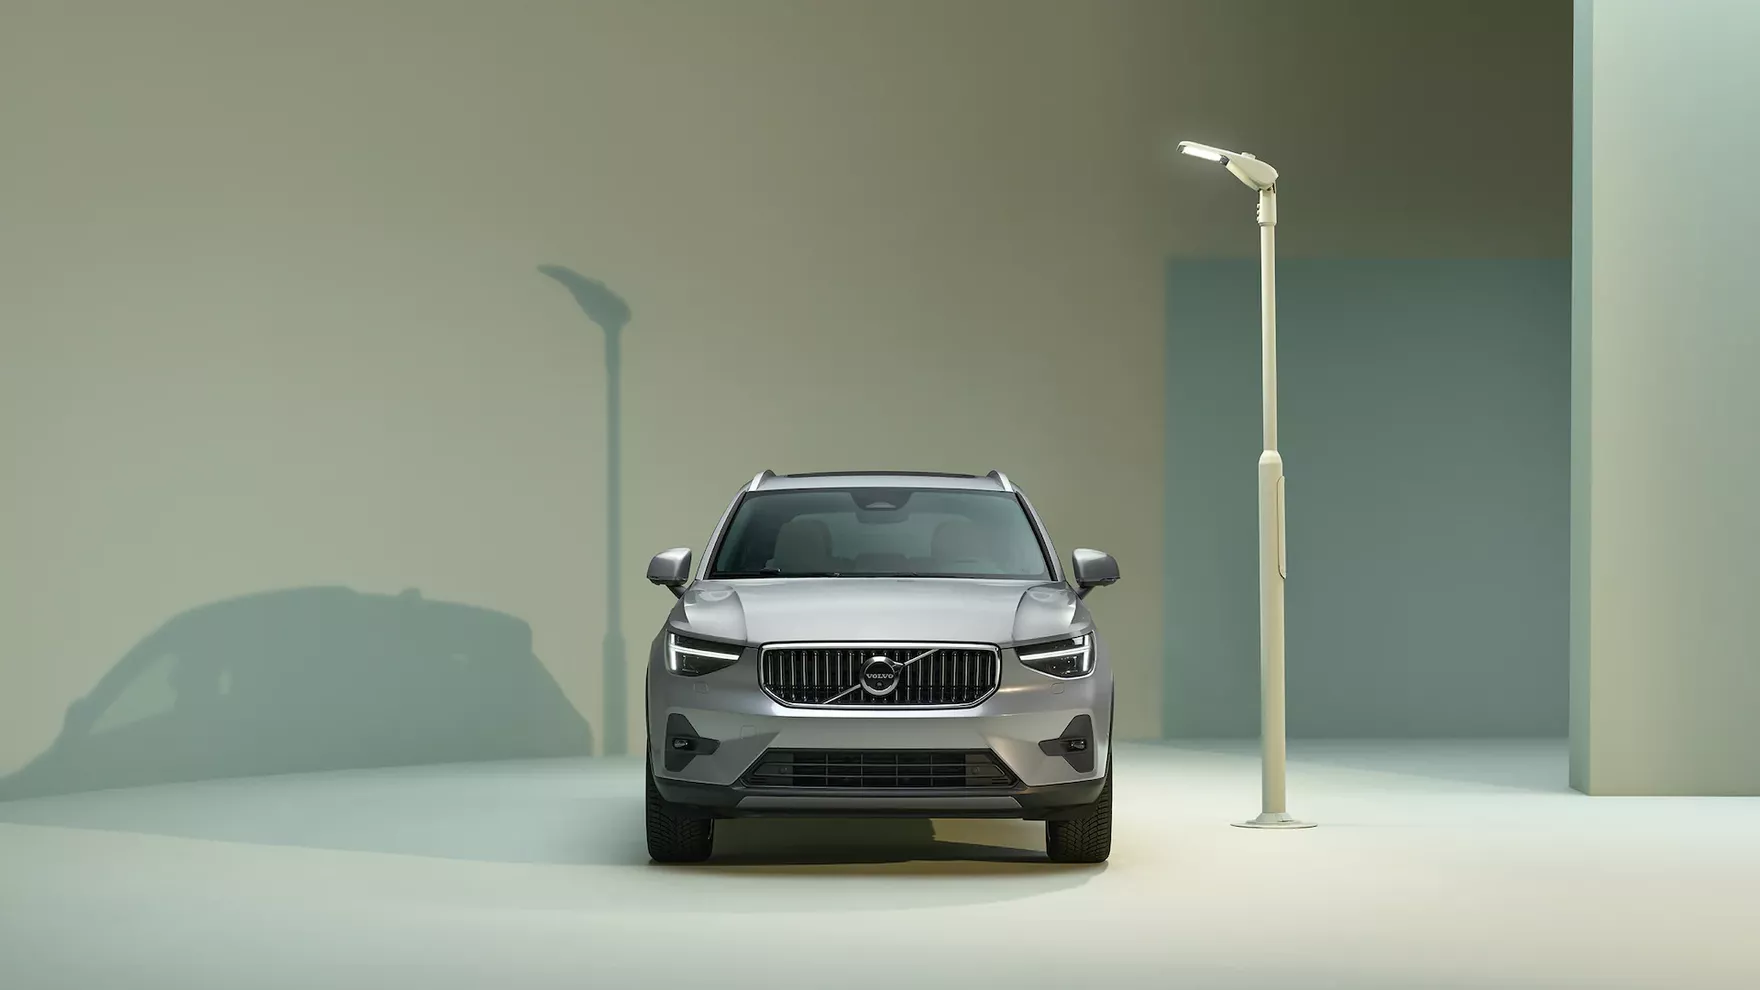 Posmakuj szwedzkiego świata premium. Komfortowe Volvo XC40 już za niecałe 1500 zł miesięcznie